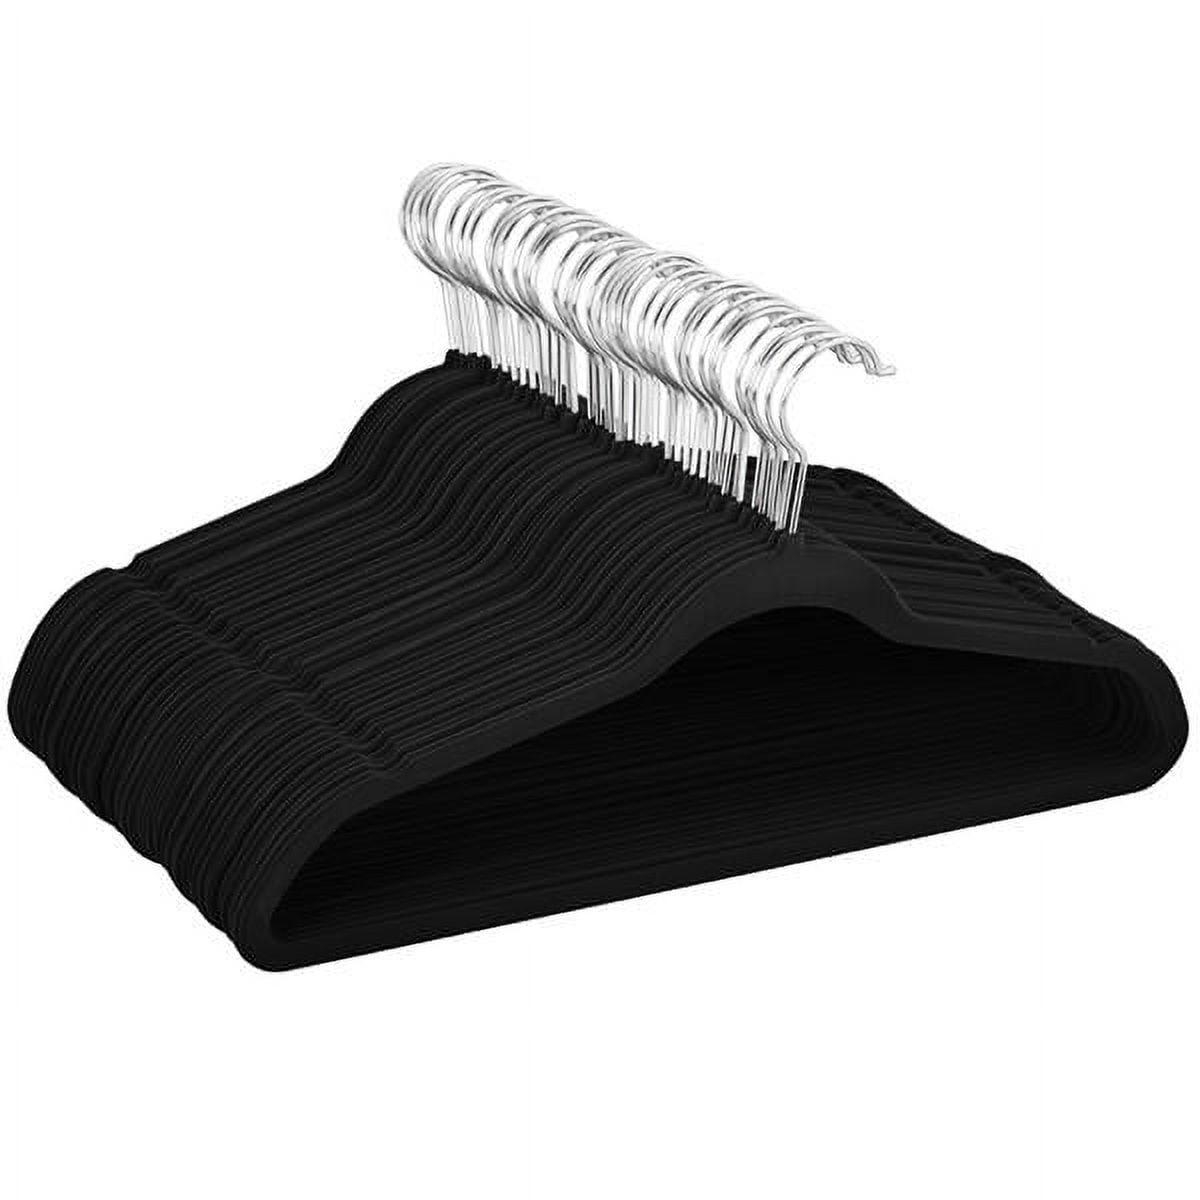 Velvet Hangers Non Slip Flocked Grey x 30 Heavy Duty With Trouser & Tie Bar